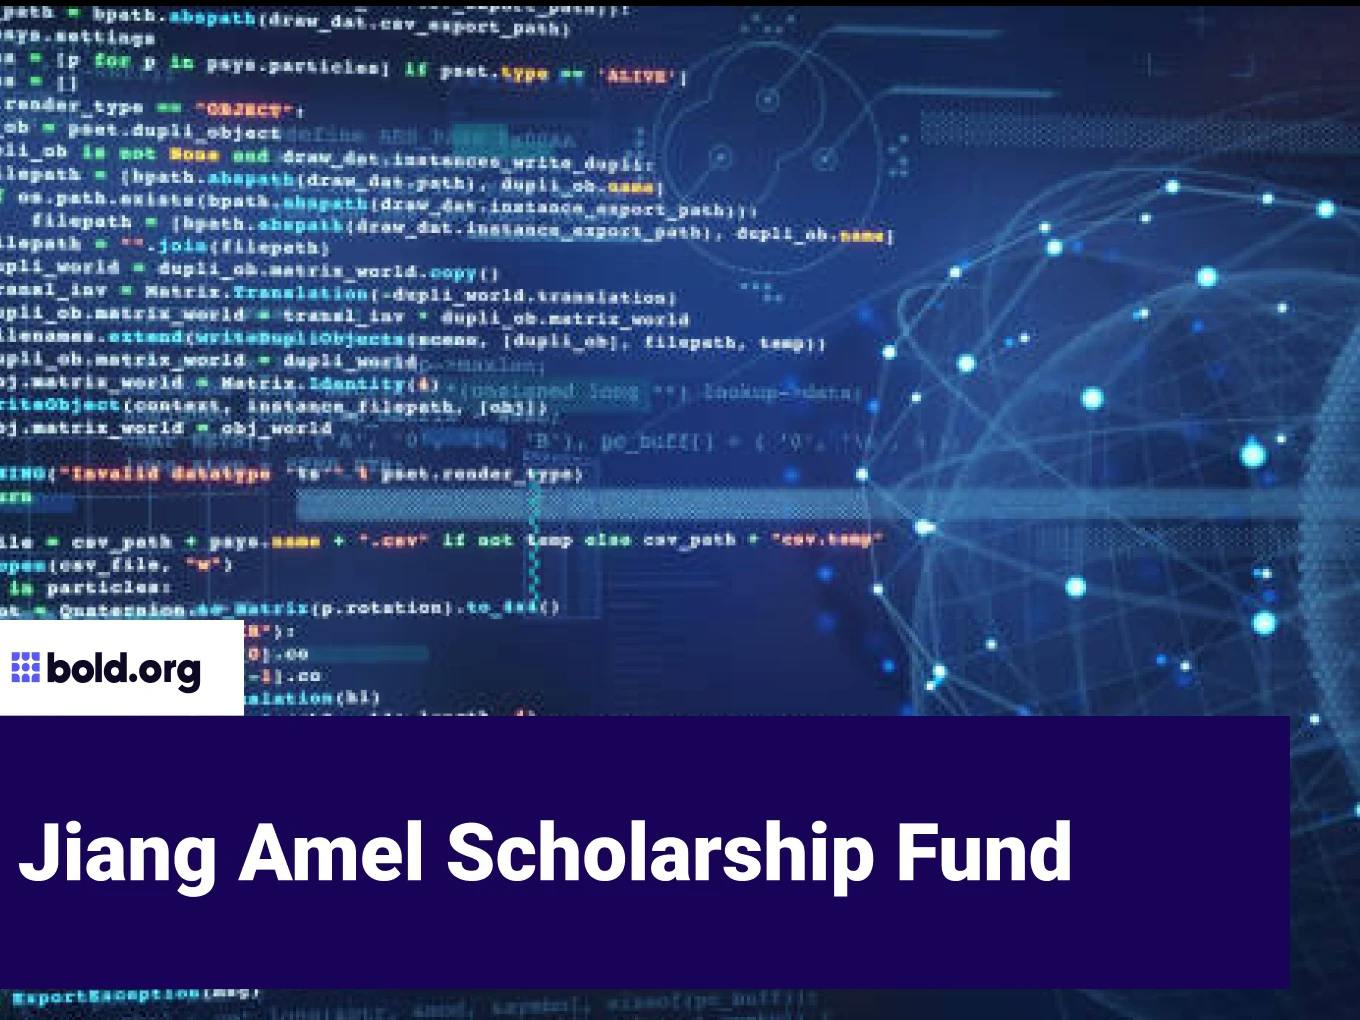 Jiang Amel Scholarship Fund